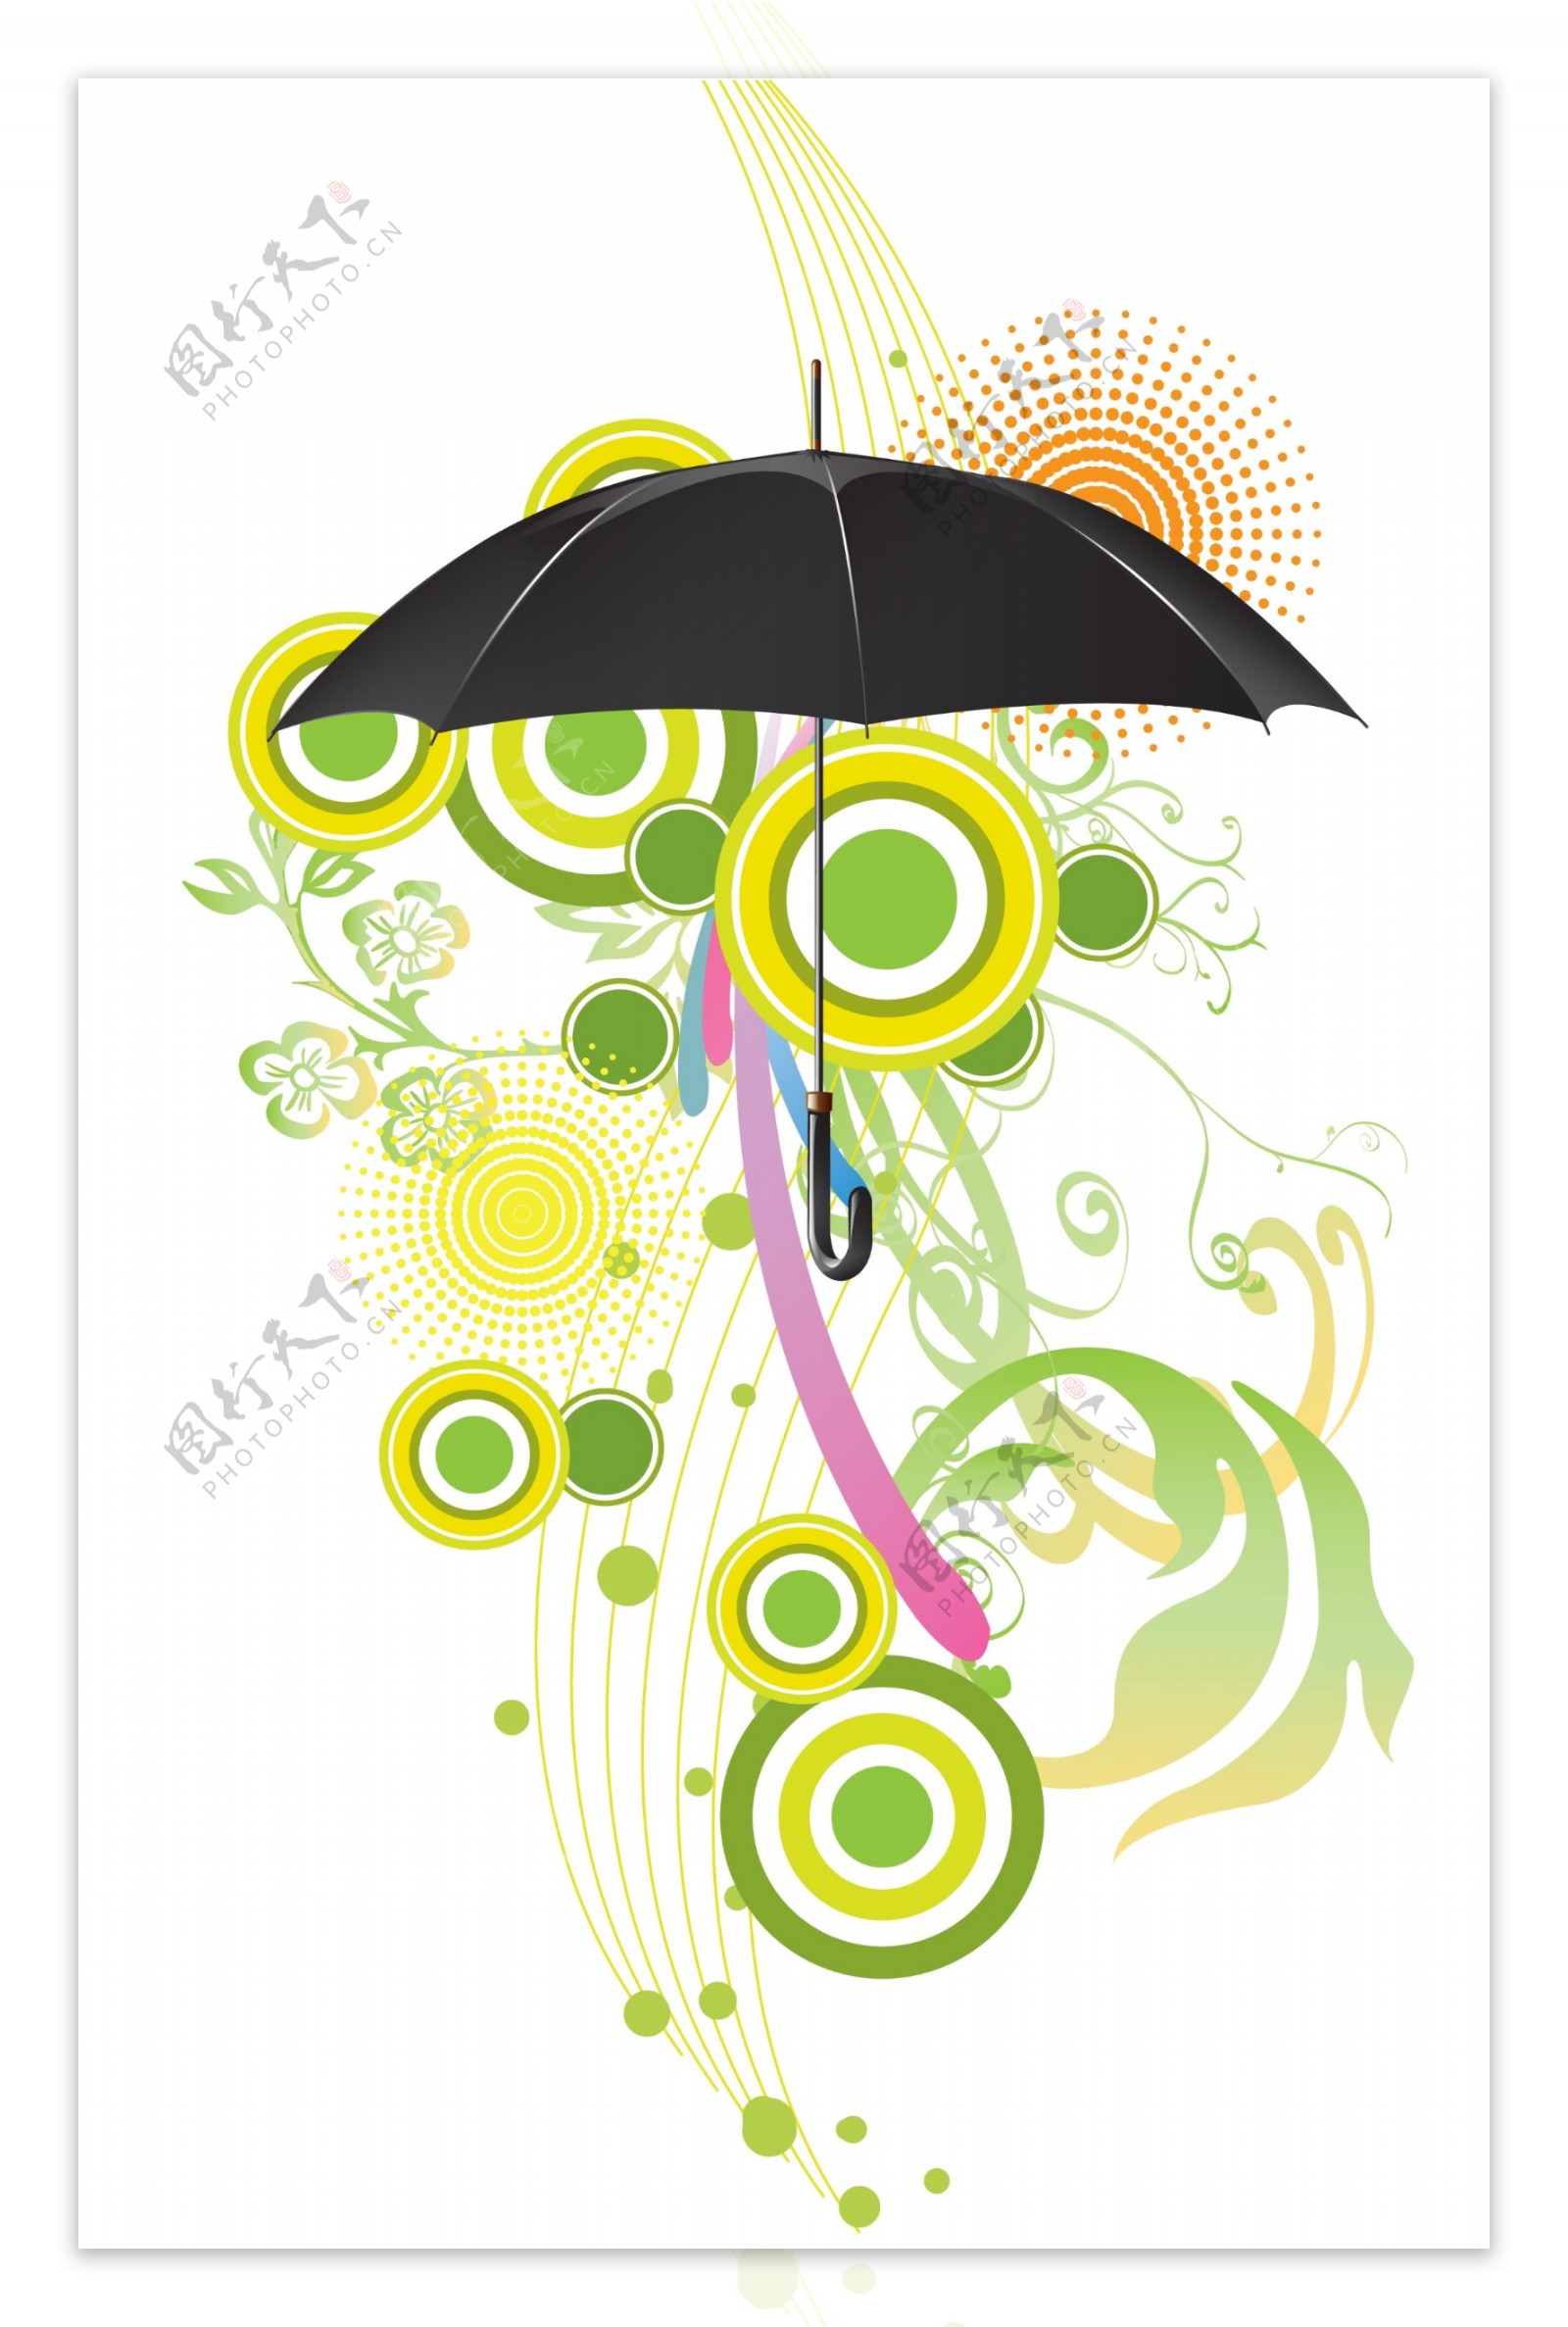 黑色雨伞与时尚图案等PSD分层素材